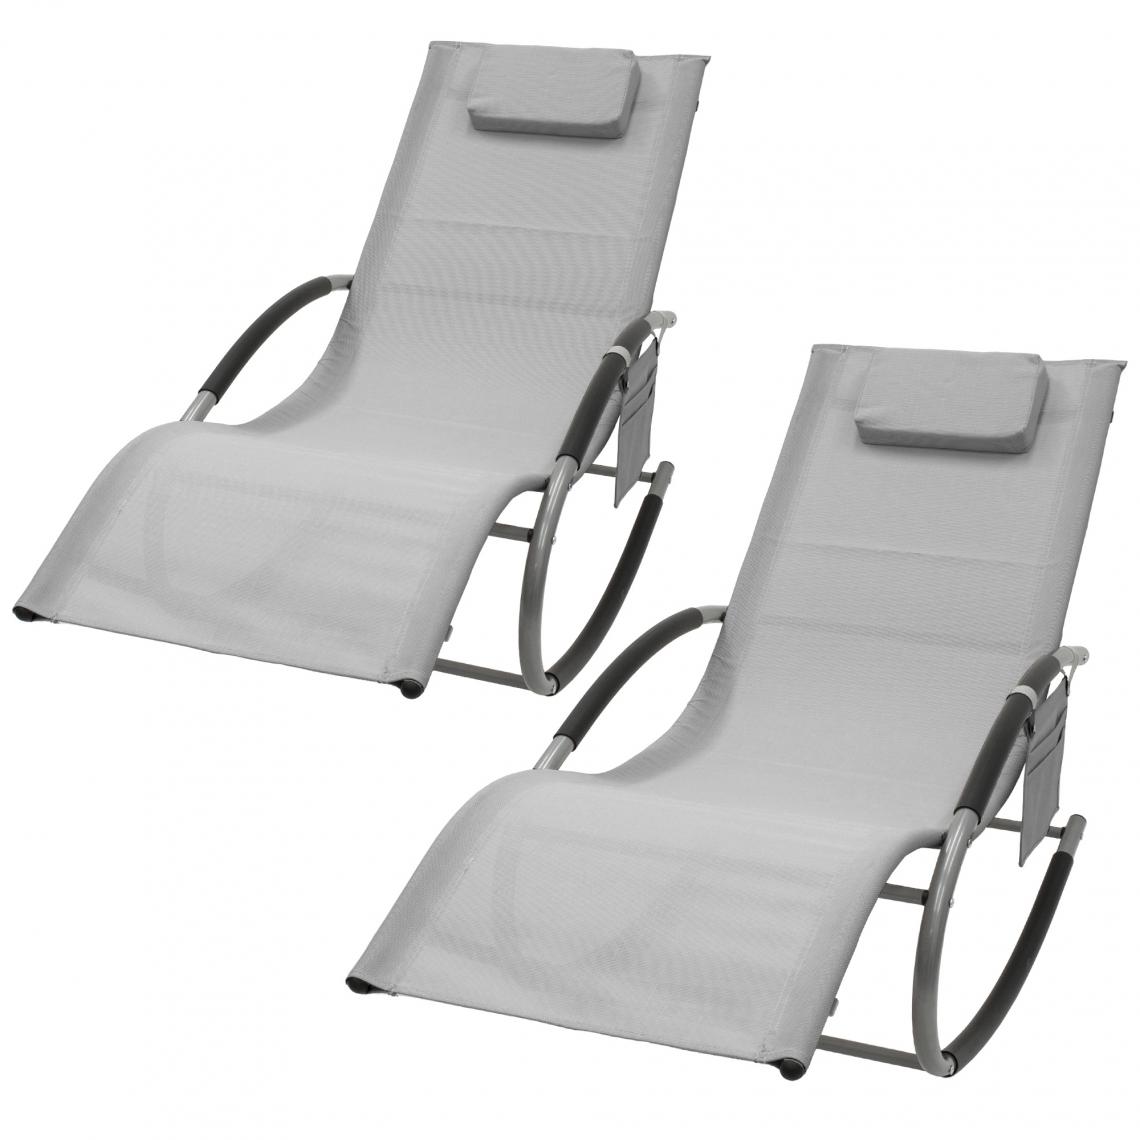 ML-Design - Lot de 2 chaise longue bain de soleil à bascule gris appui-tête en aluminium - Transats, chaises longues